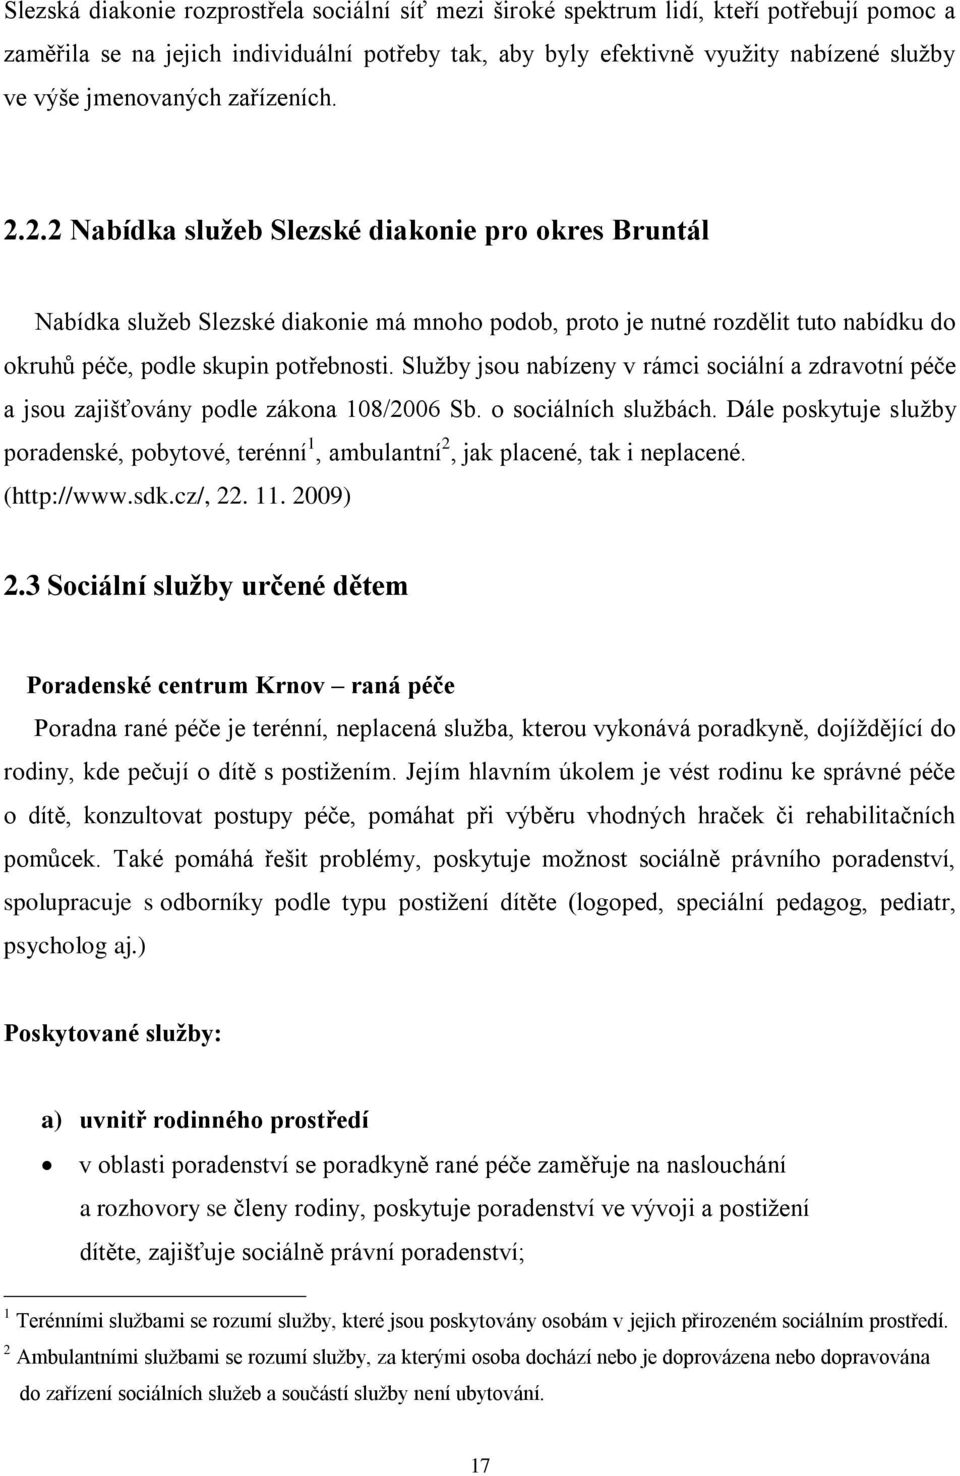 2.2 Nabídka sluţeb Slezské diakonie pro okres Bruntál Nabídka služeb Slezské diakonie má mnoho podob, proto je nutné rozdělit tuto nabídku do okruhů péče, podle skupin potřebnosti.